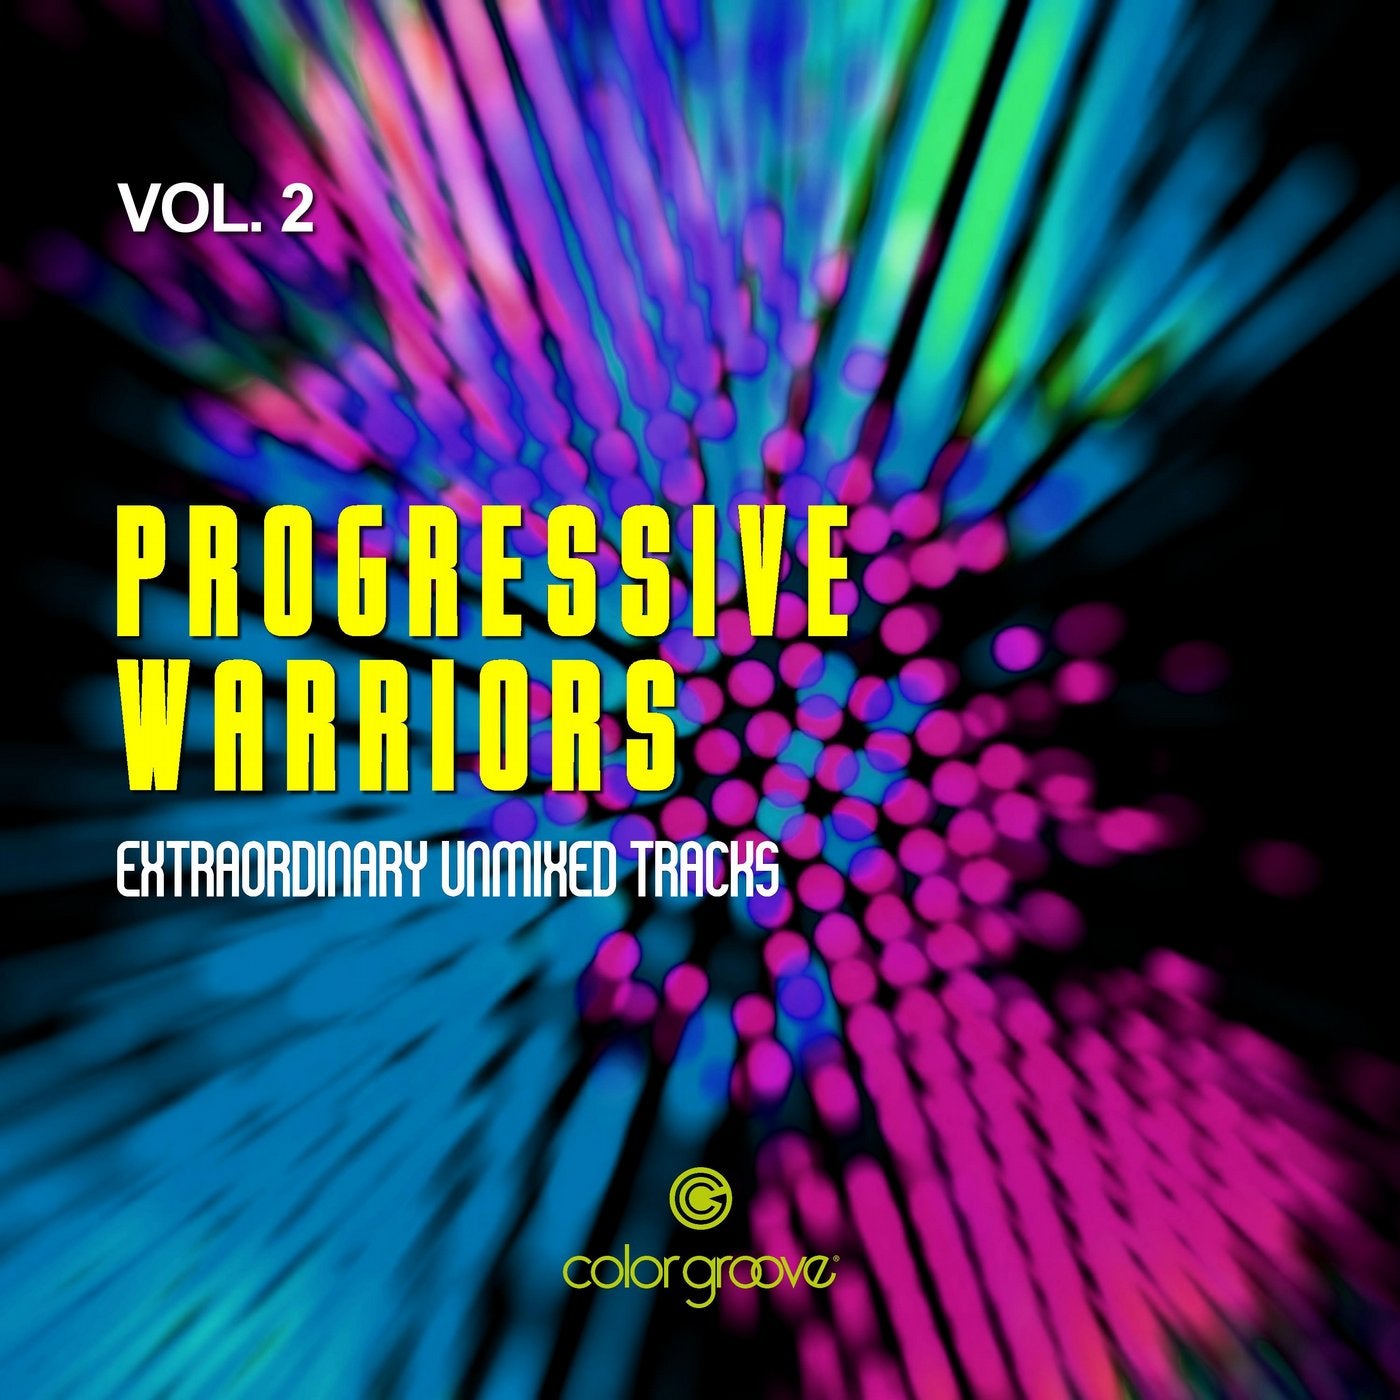 Progressive Warriors, Vol. 2 (Extraordinary Unmixed Tracks)